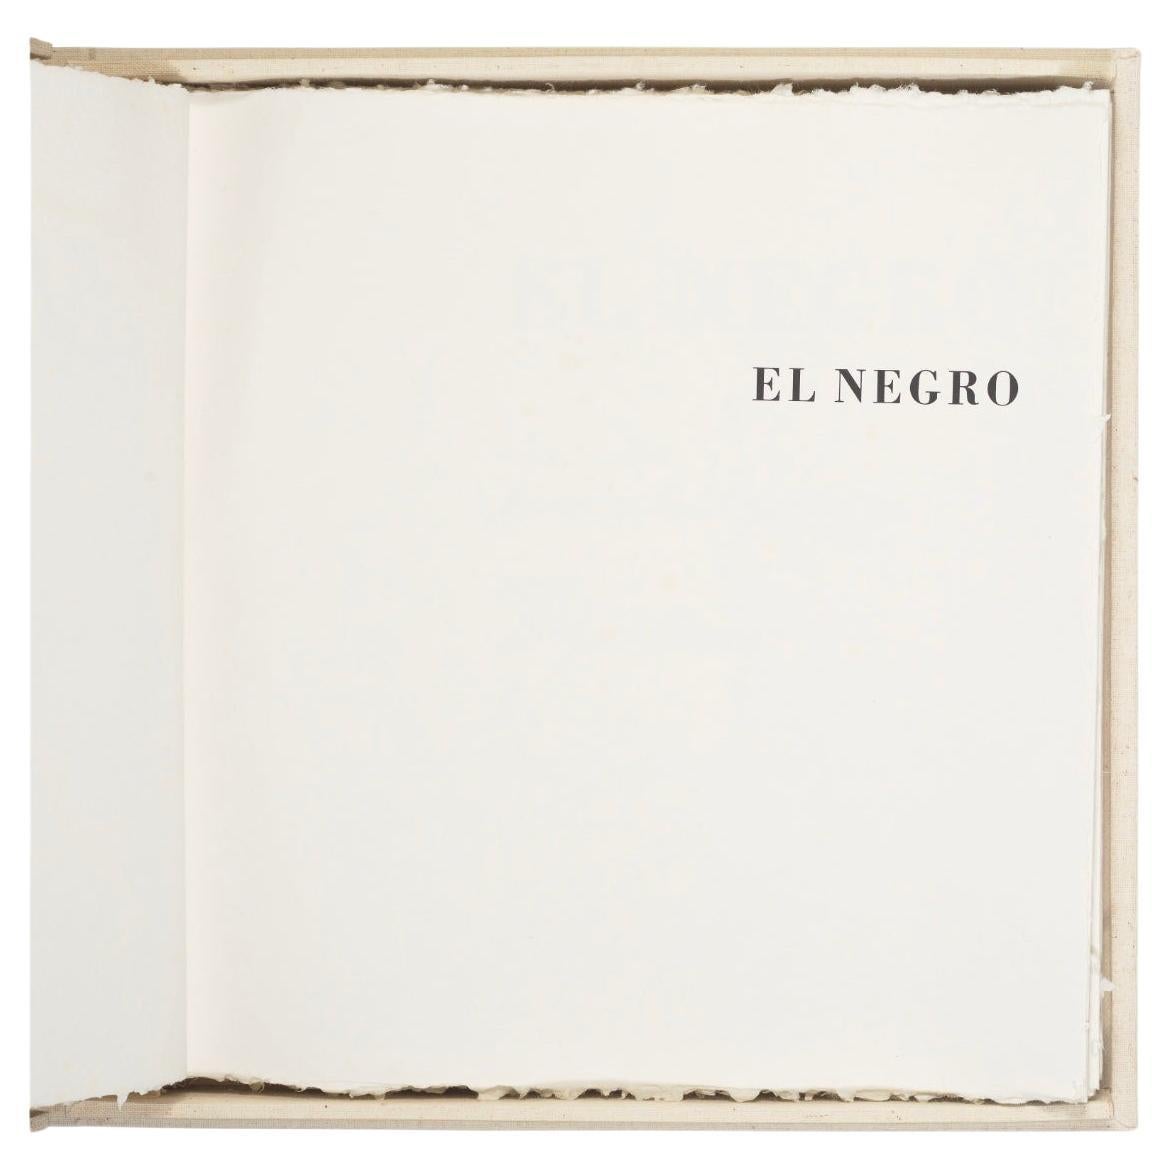 El Negro – Robert Motherwell (1915-1991)